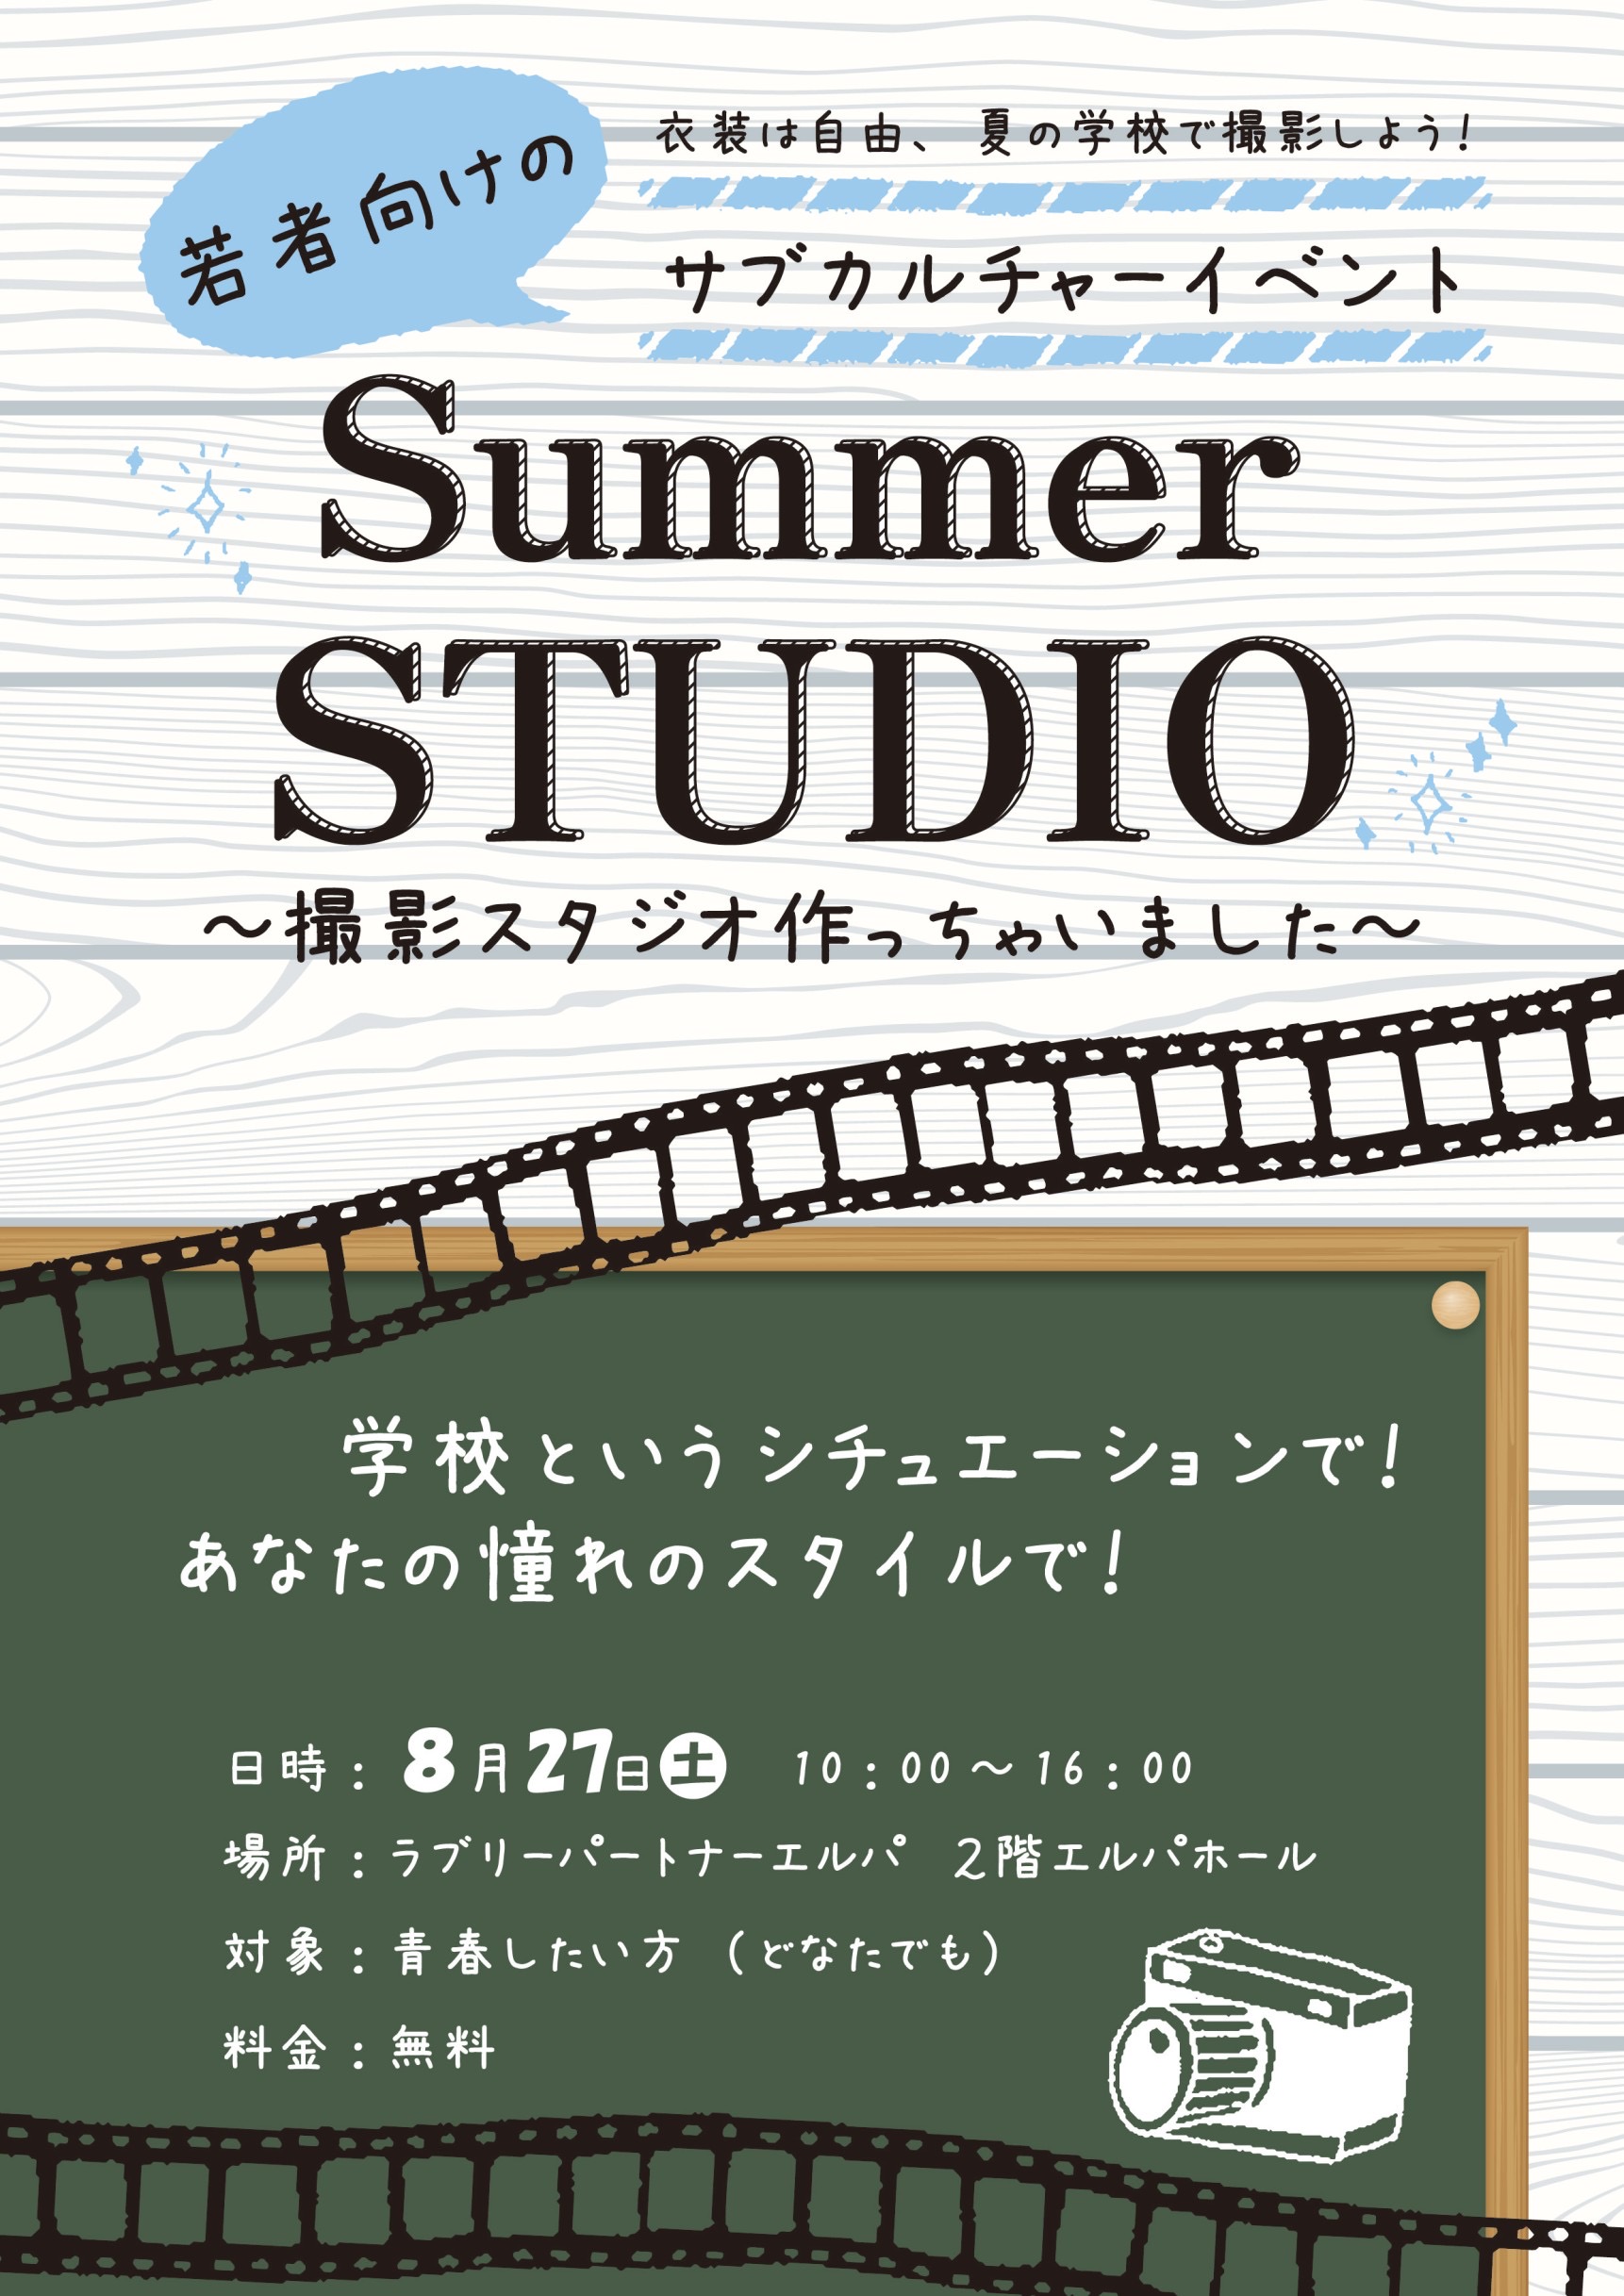 Summer STUDIO〜撮影スタジオ作っちゃいました〜 メイン画像